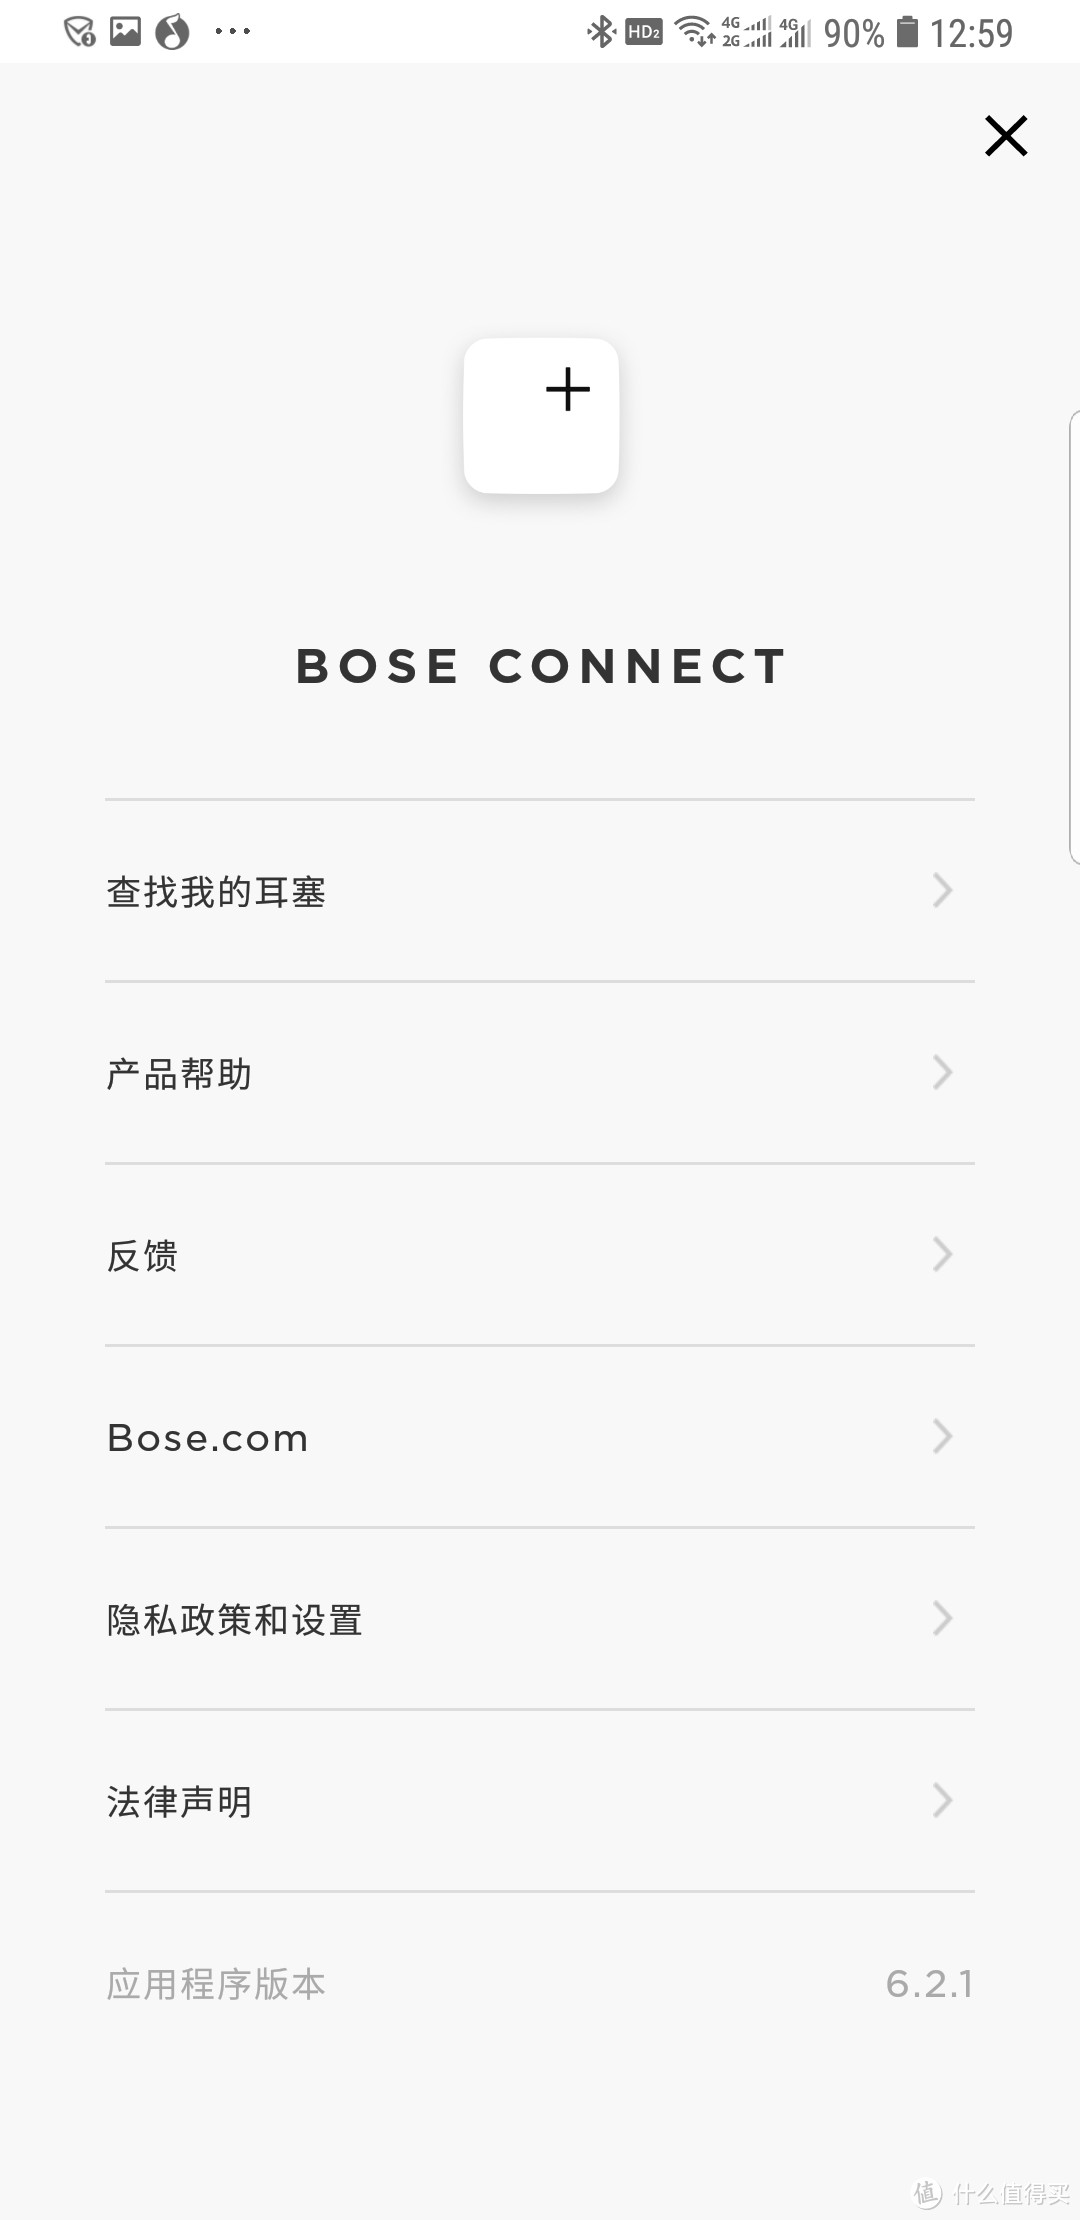 BOSE SoundSport wireless